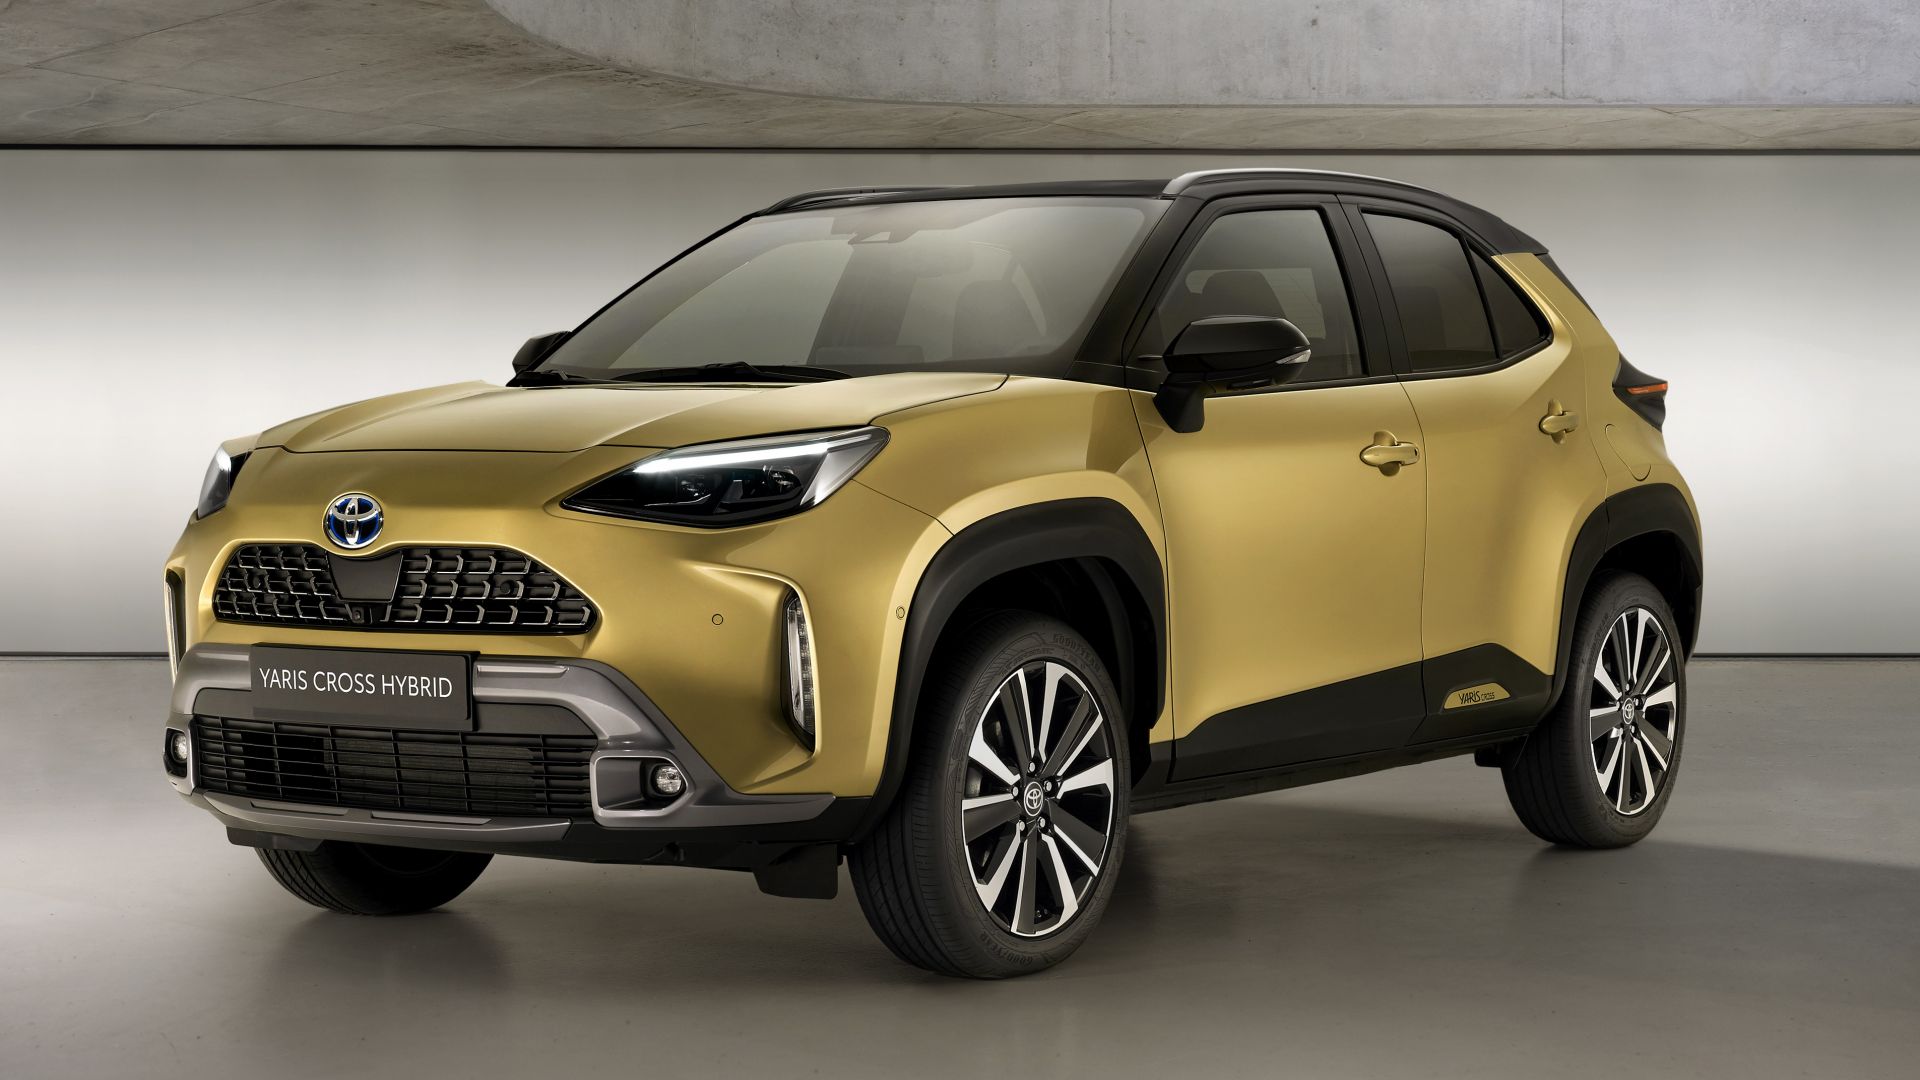 Nuovo SUV compatto 2021 Toyota Yaris Cross Adventure: quando esce - MotorBox